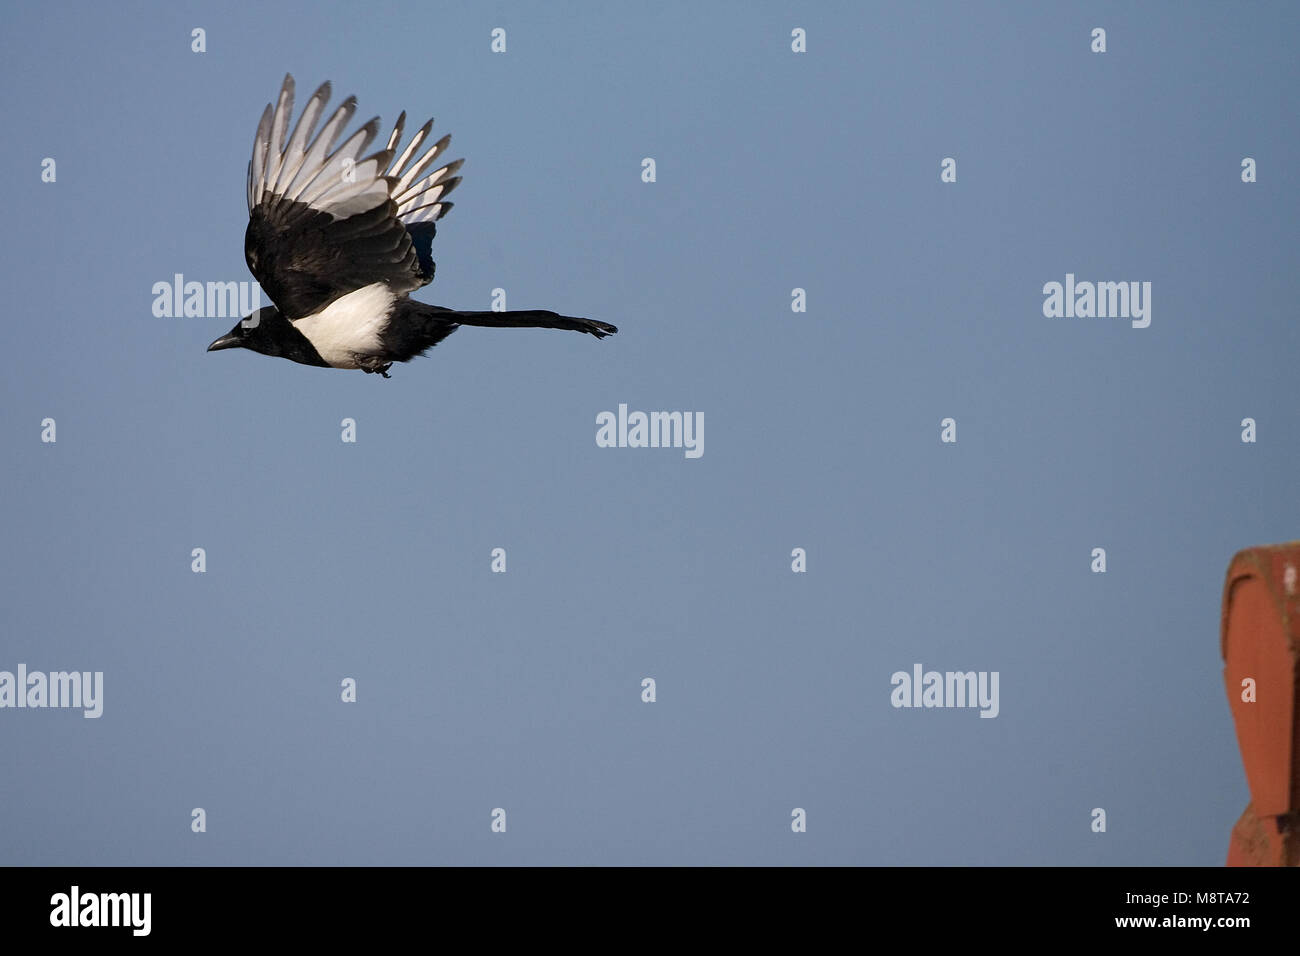 Eurasian Magpie Flying, Ekster vliegend Stockfoto